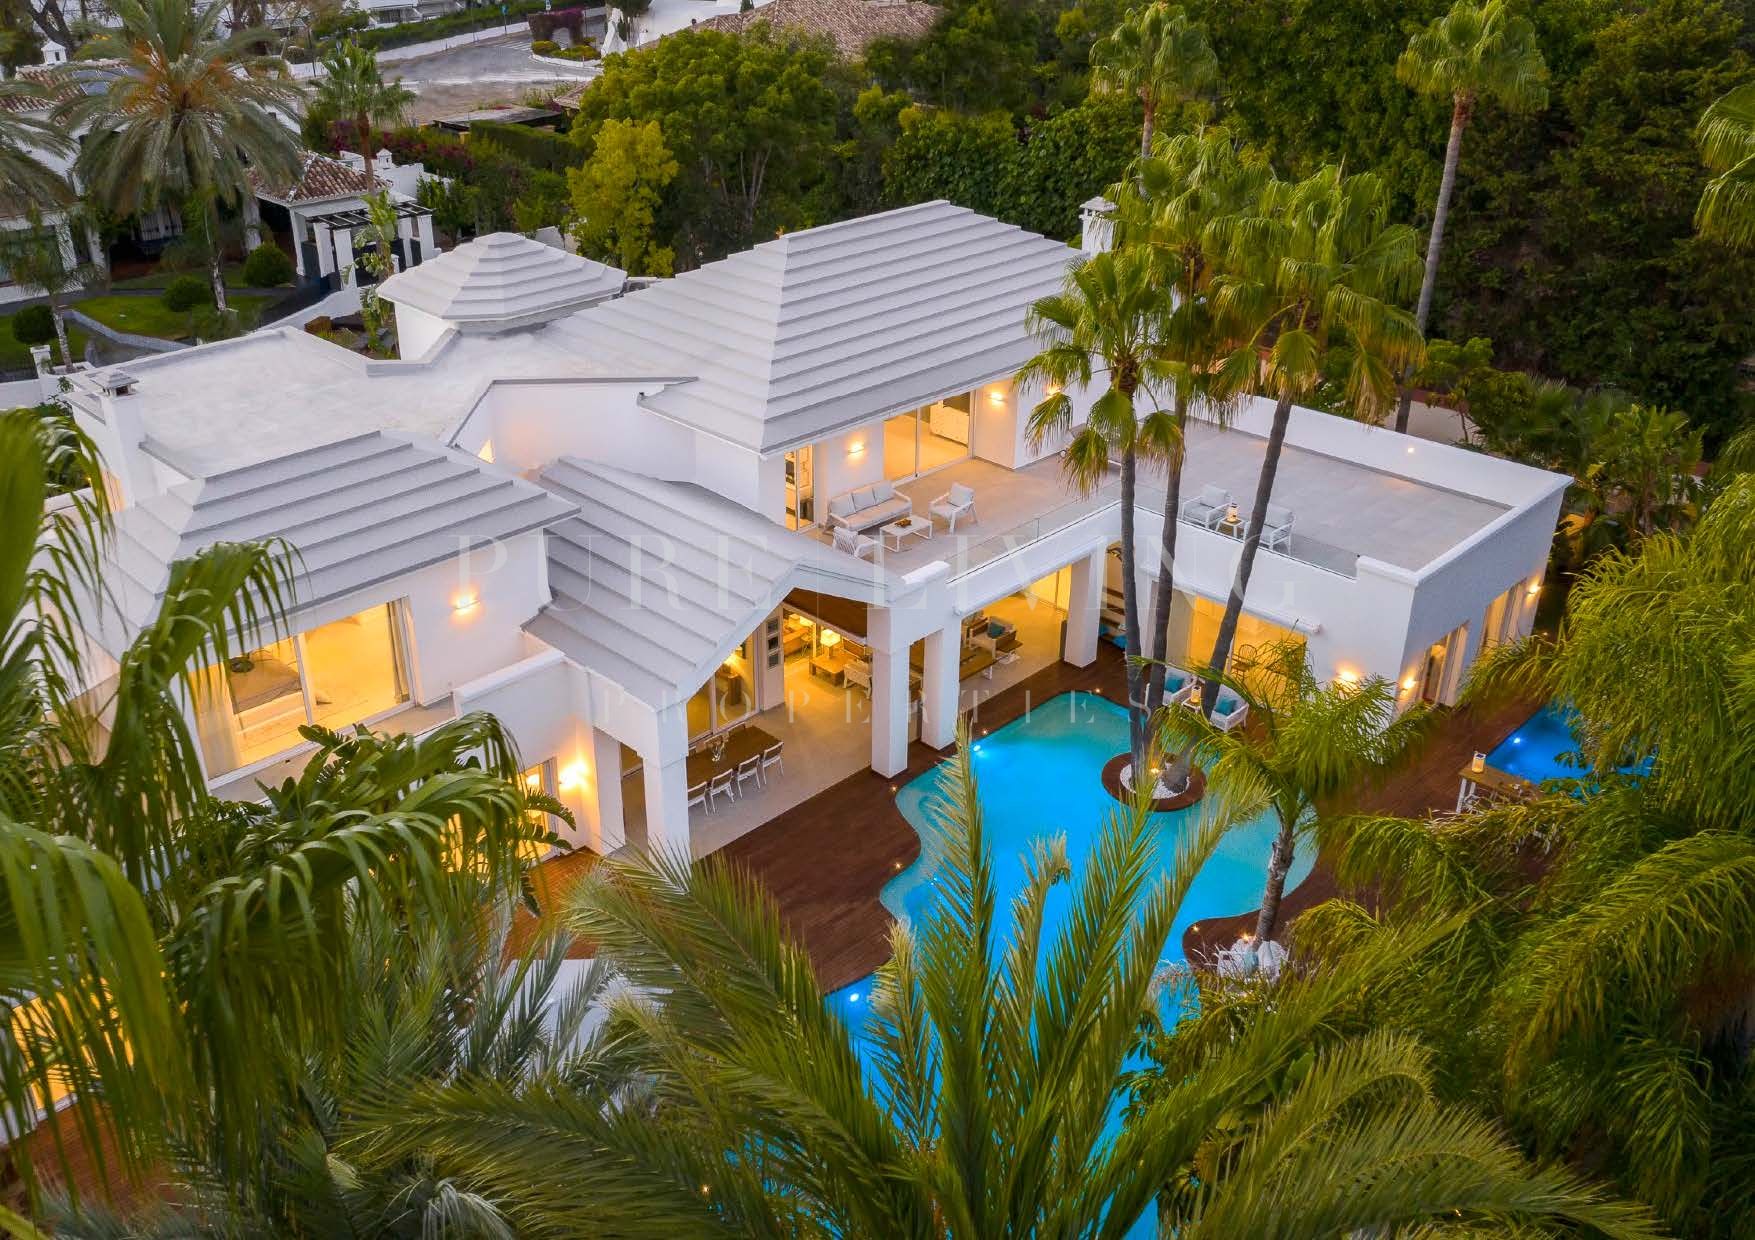 Excepcional villa de seis dormitorios con un oasis privado y jardines tropicales en Guadalmina Baja